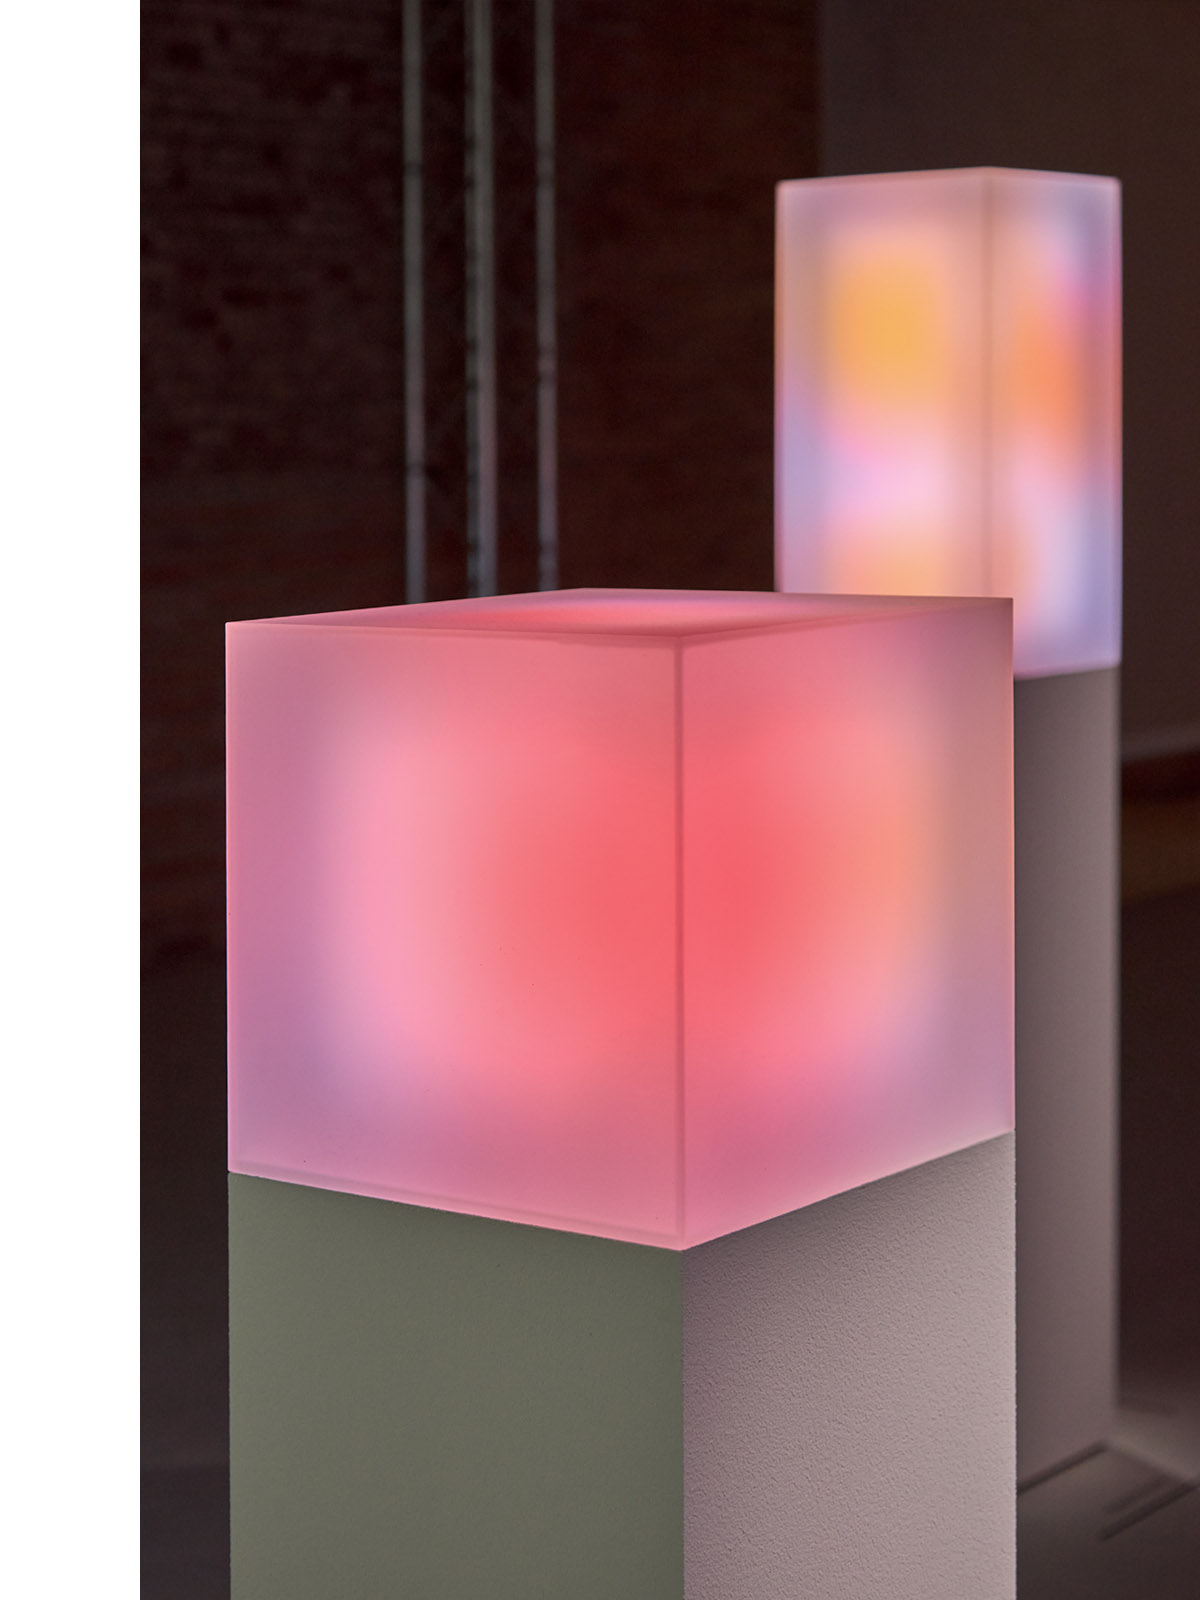 빛과 색에 중점을 둔 미술 설치의 일부로, 배경에 은은하게 빛나는 다채로운 큐브와 함께 받침대 위에 빛나는 분홍색 큐브의 클로즈업.